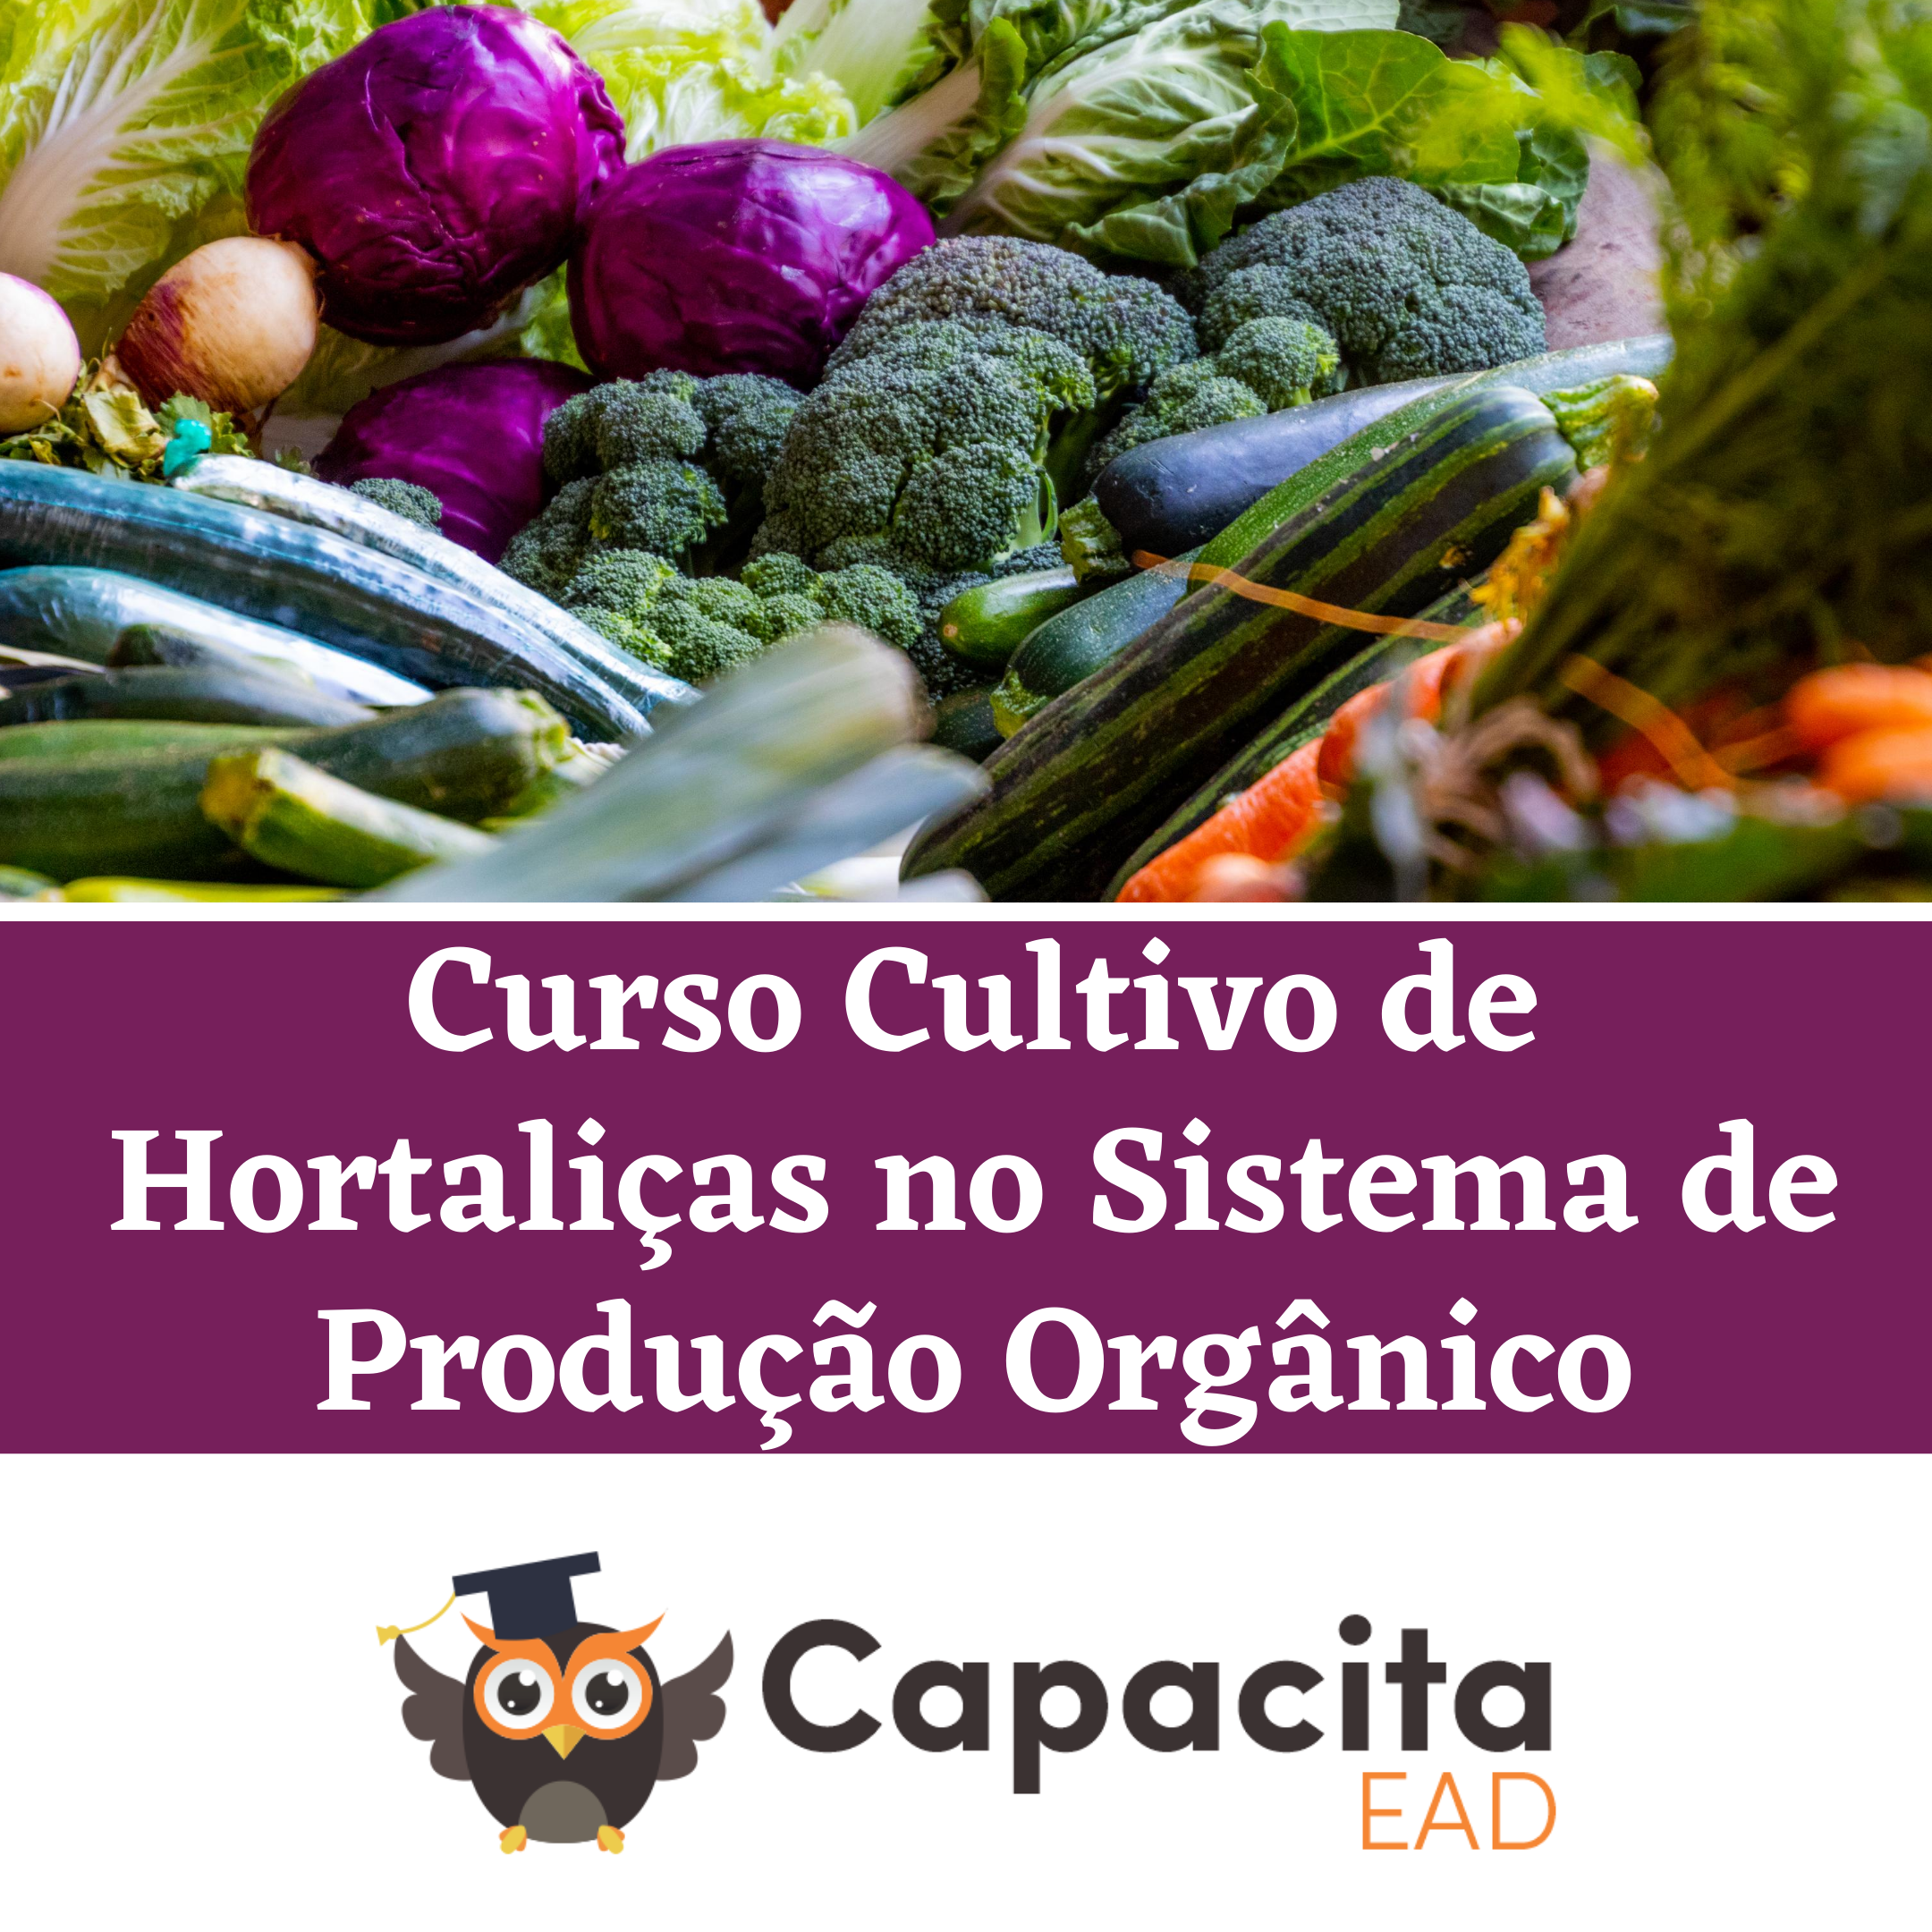 Curso Cultivo de Hortaliças no Sistema de Produção Orgânico